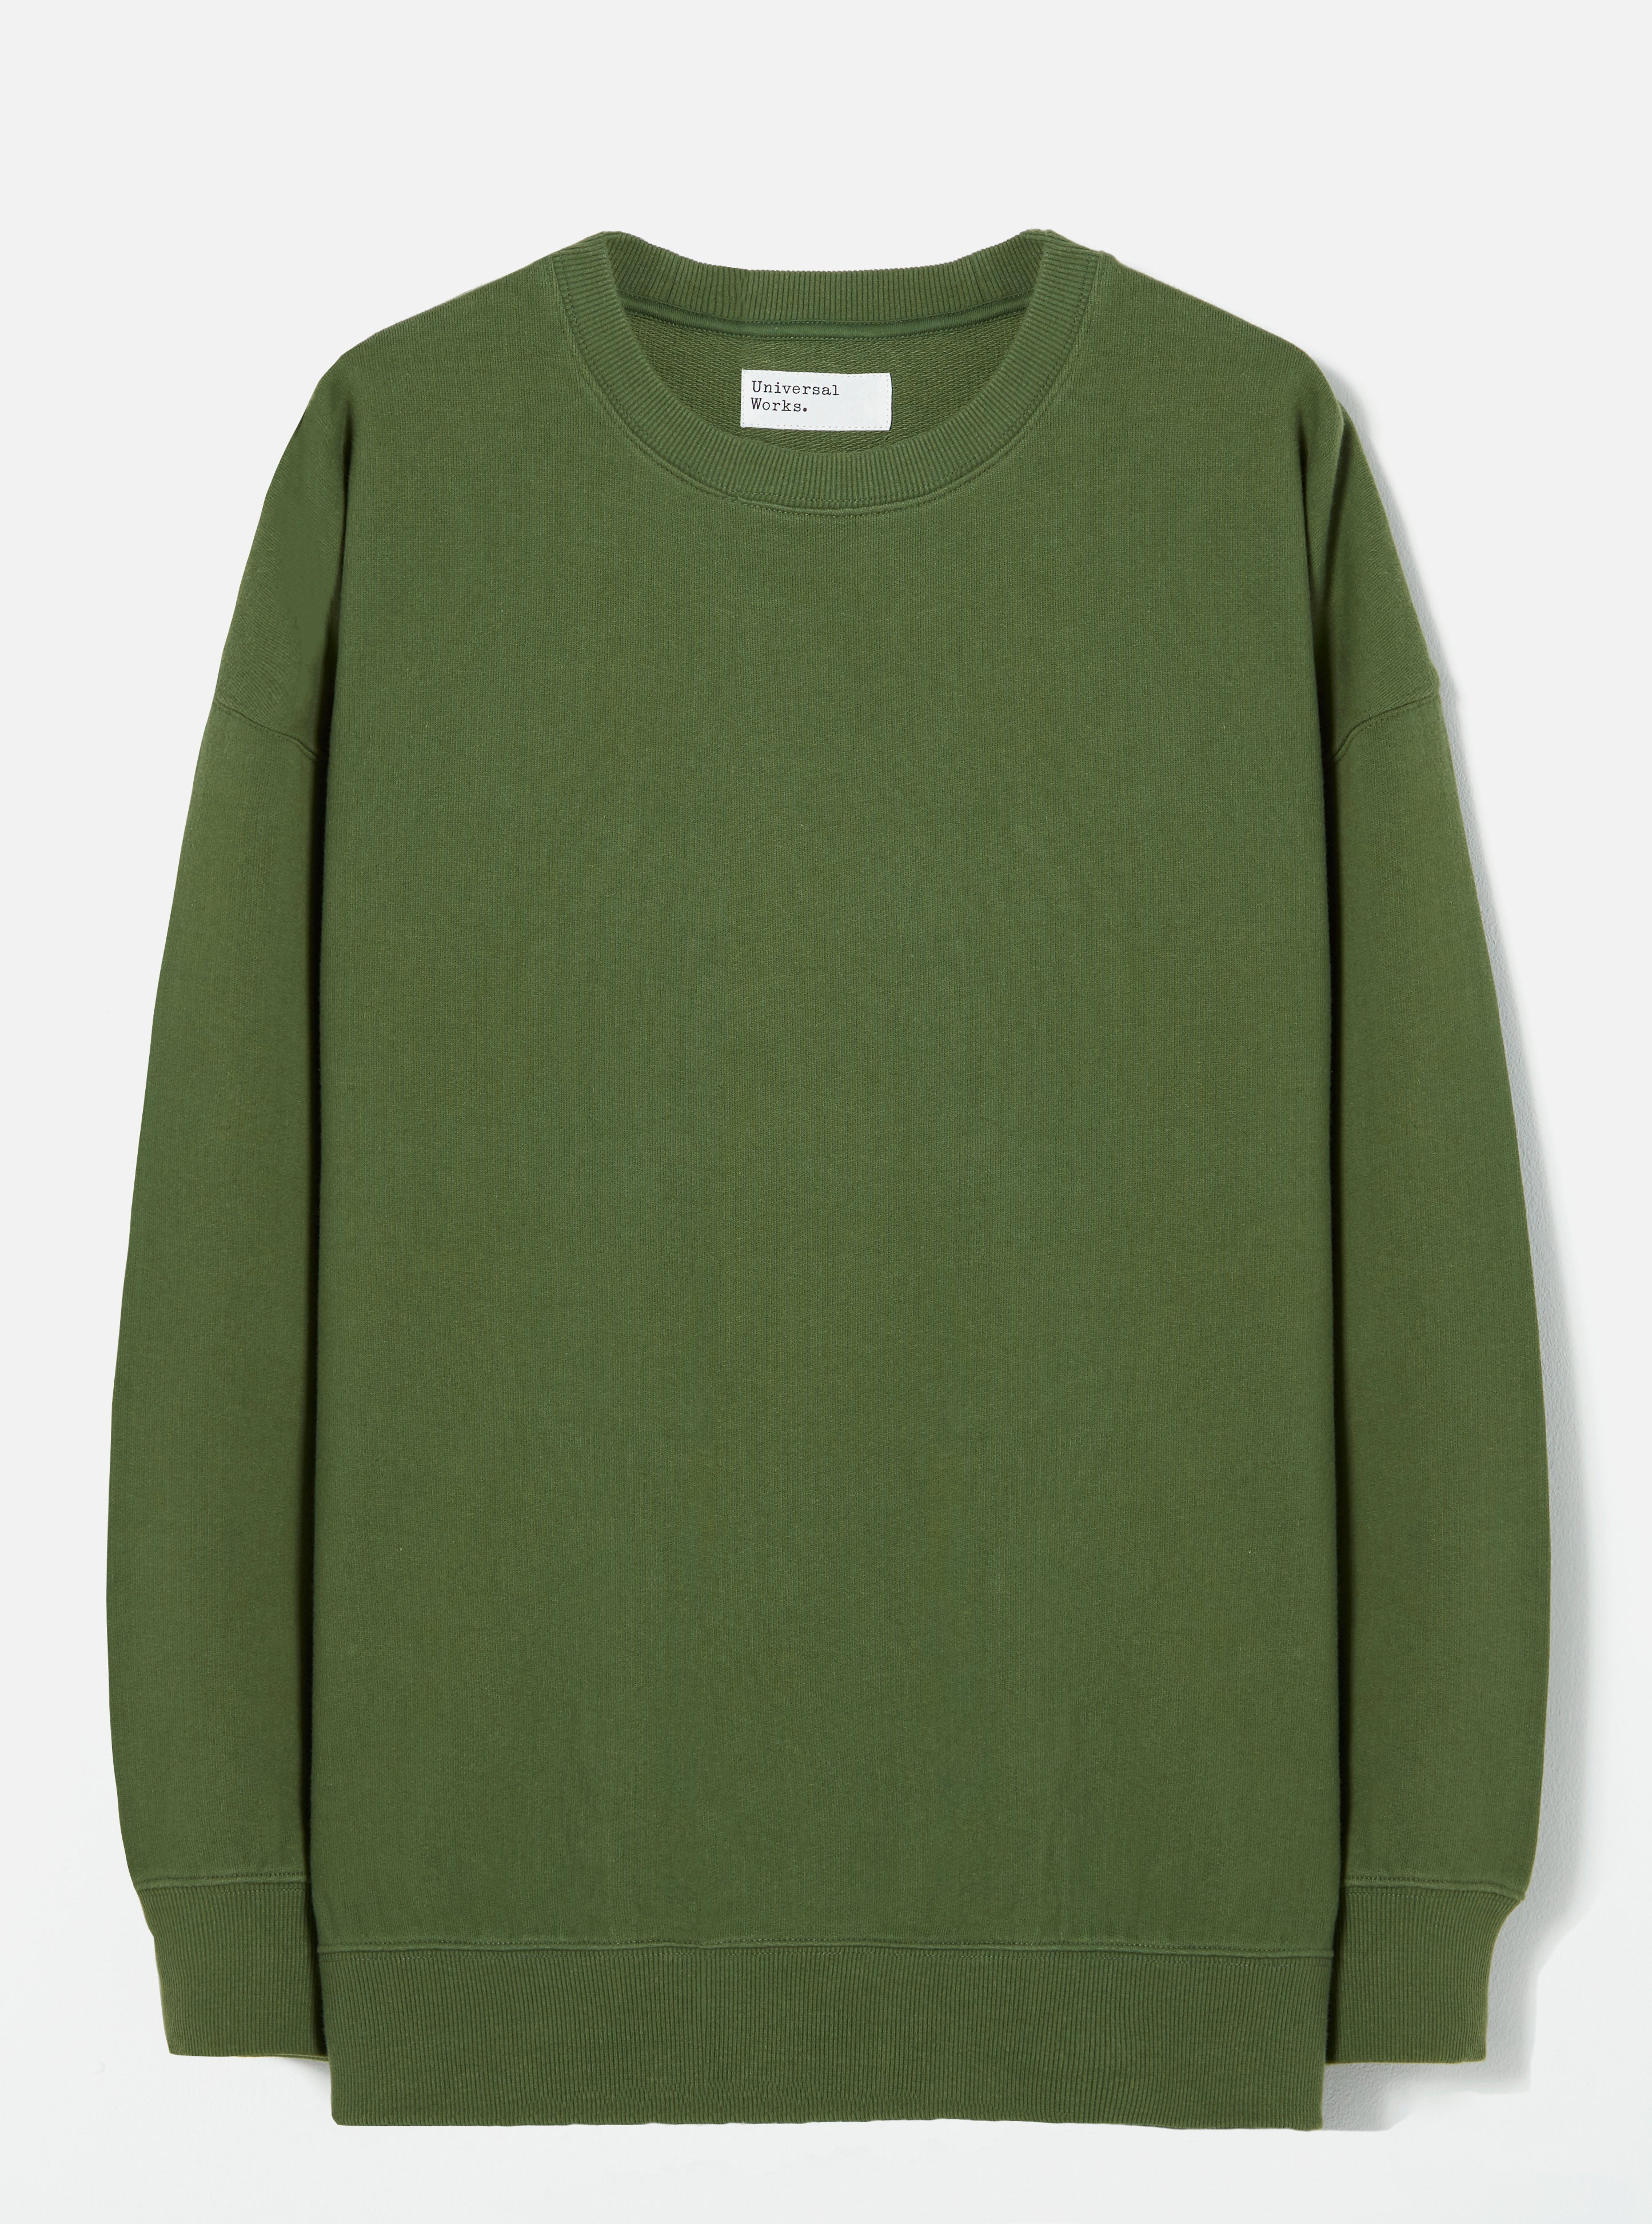 oversized green sweatshirt